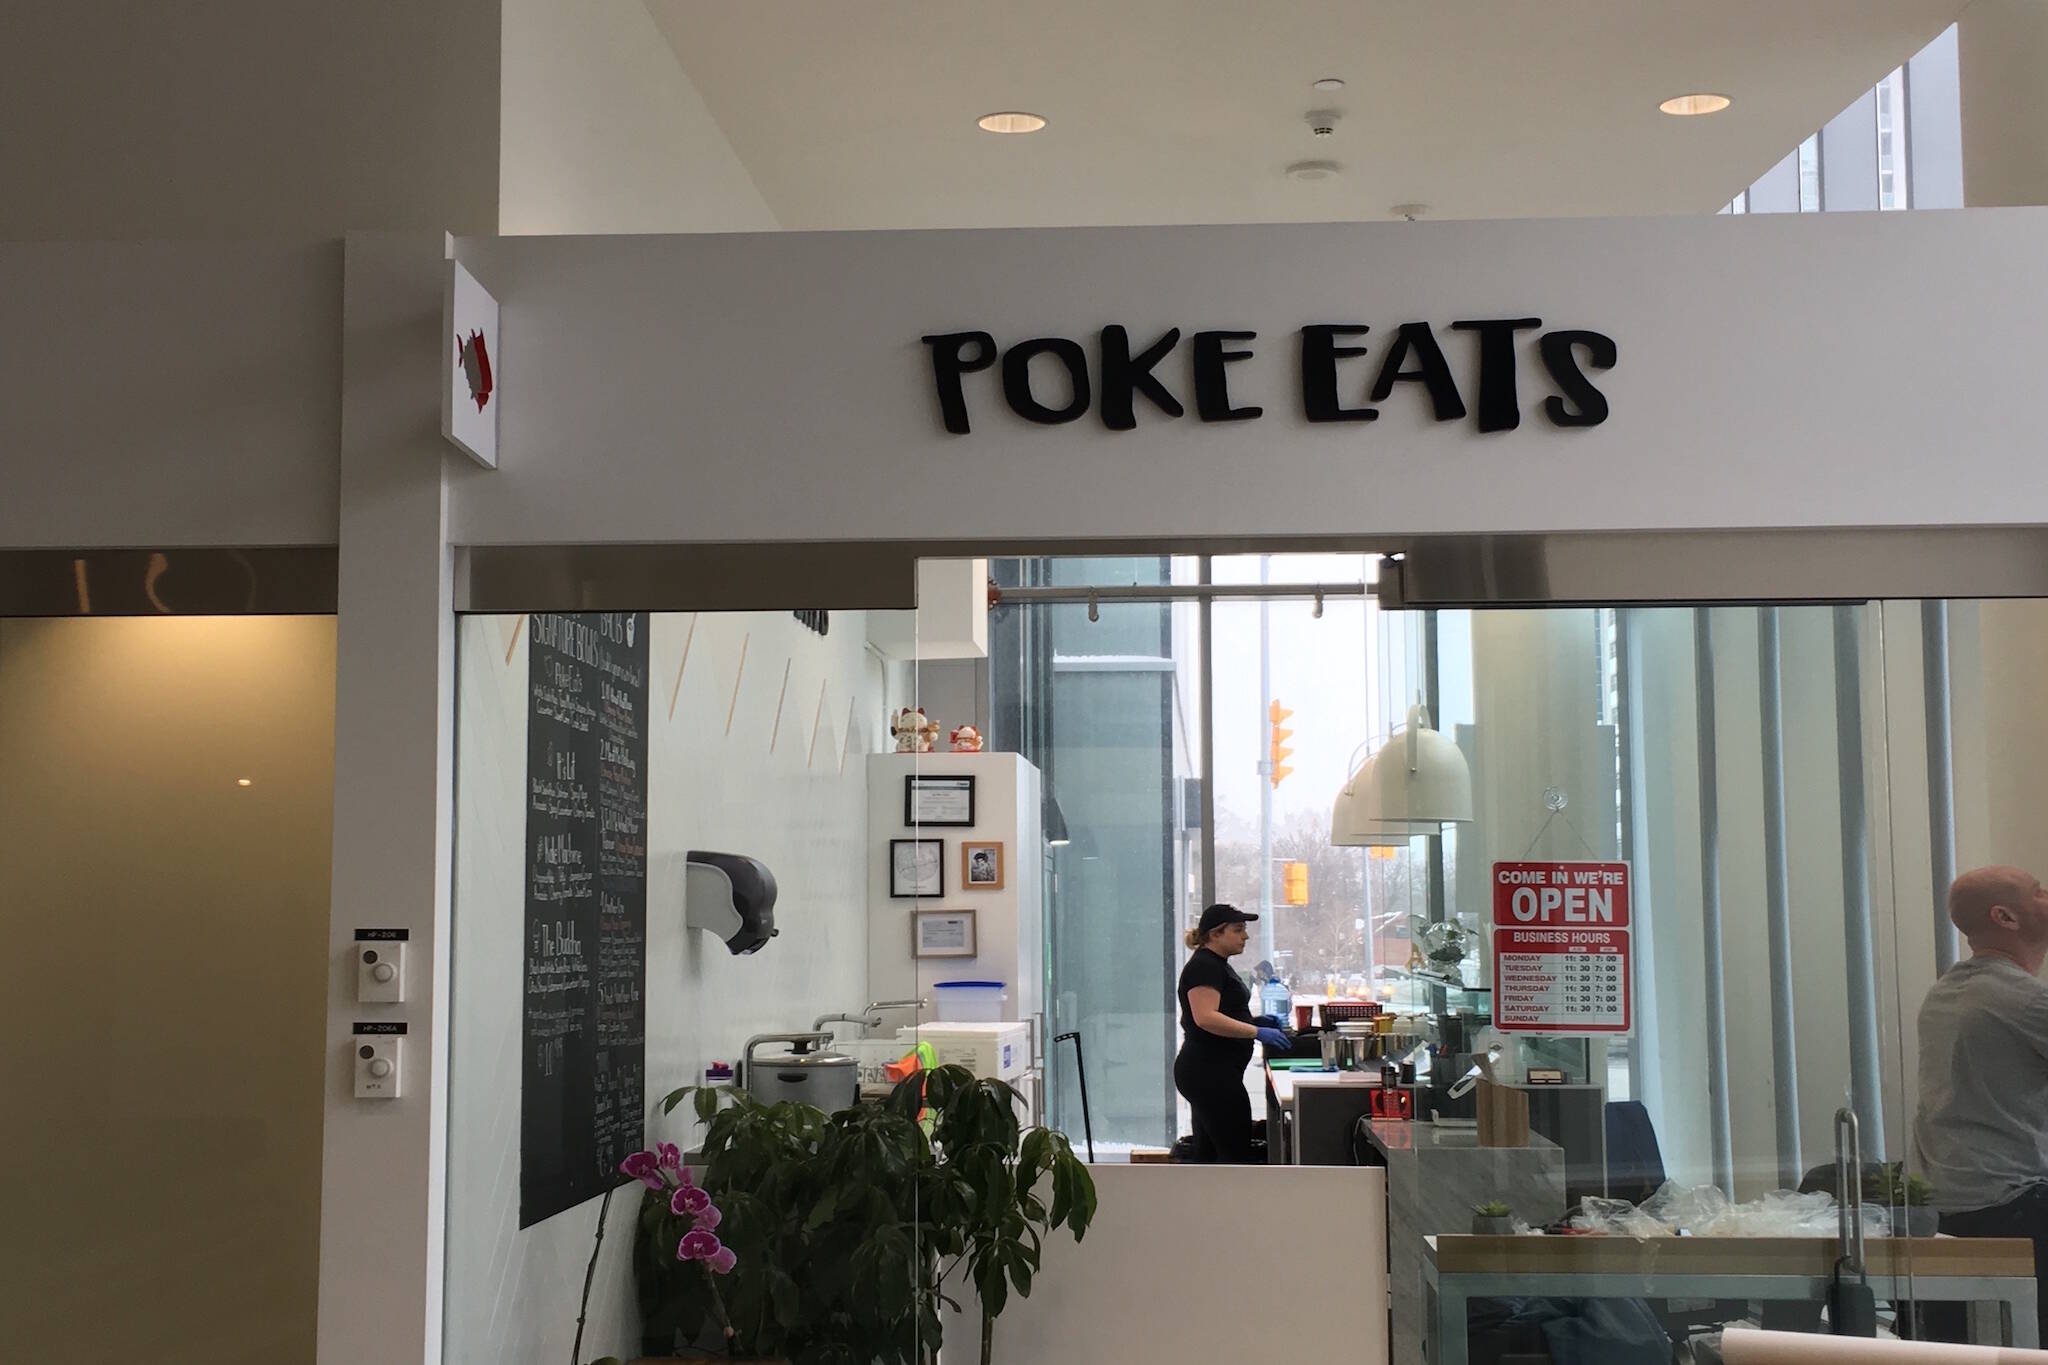 Poke Eats Toronto